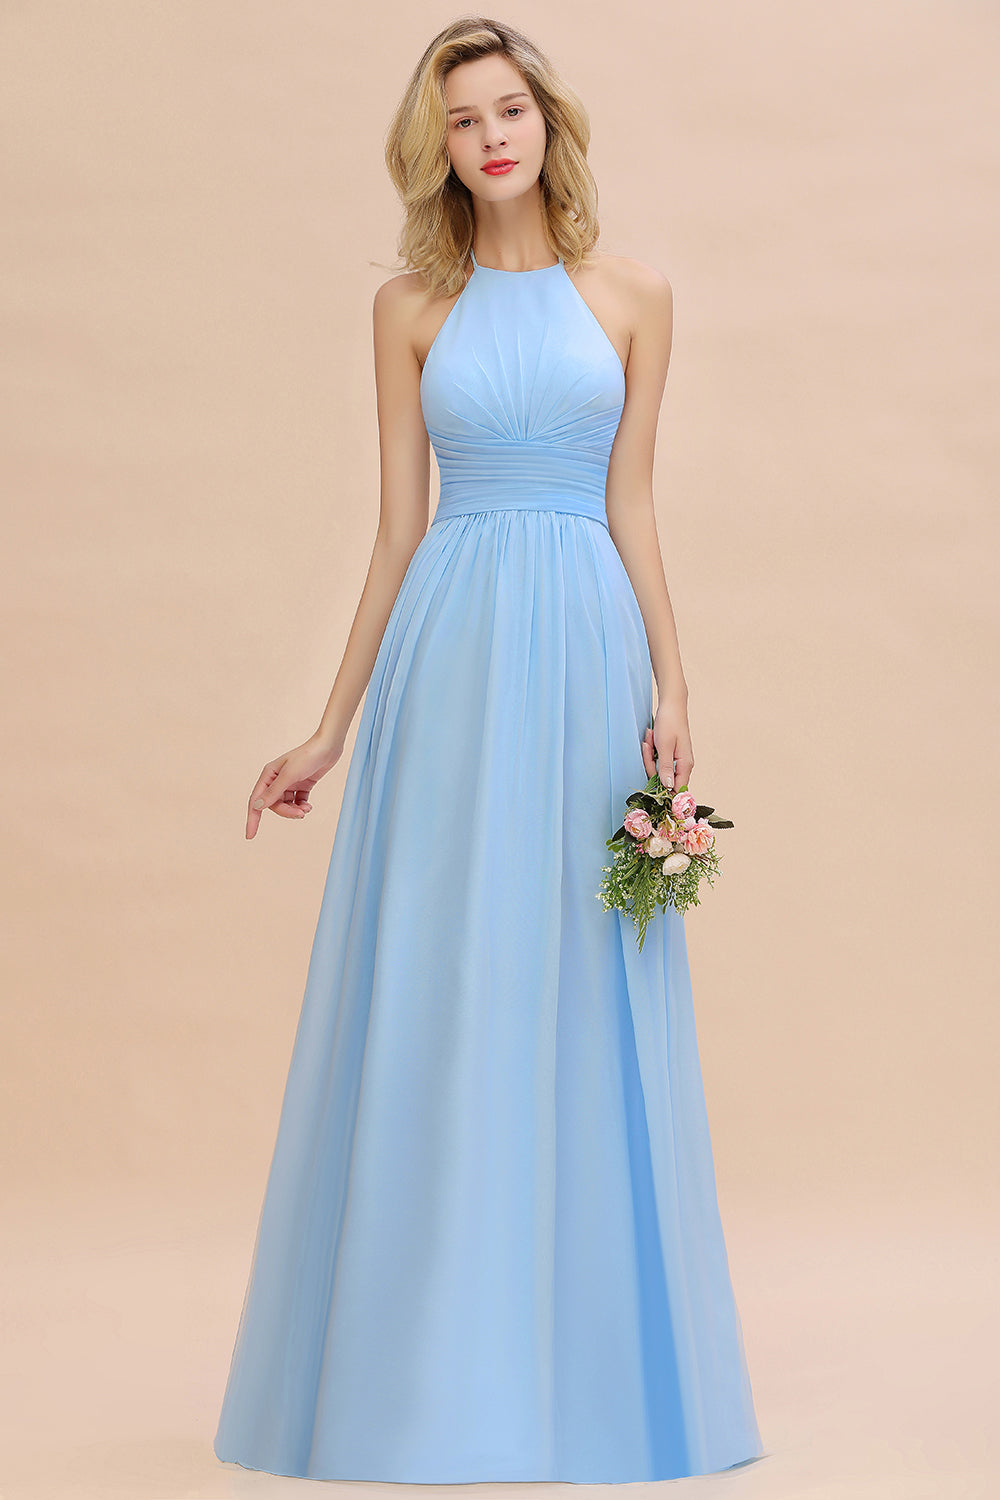 Bestellen Sie Brautjungfernkleider Lang Heller Blau online bei babyonlinedress.de. Kleider für Brautjungfern Günstig für Sie maß geschneidert bekommen.